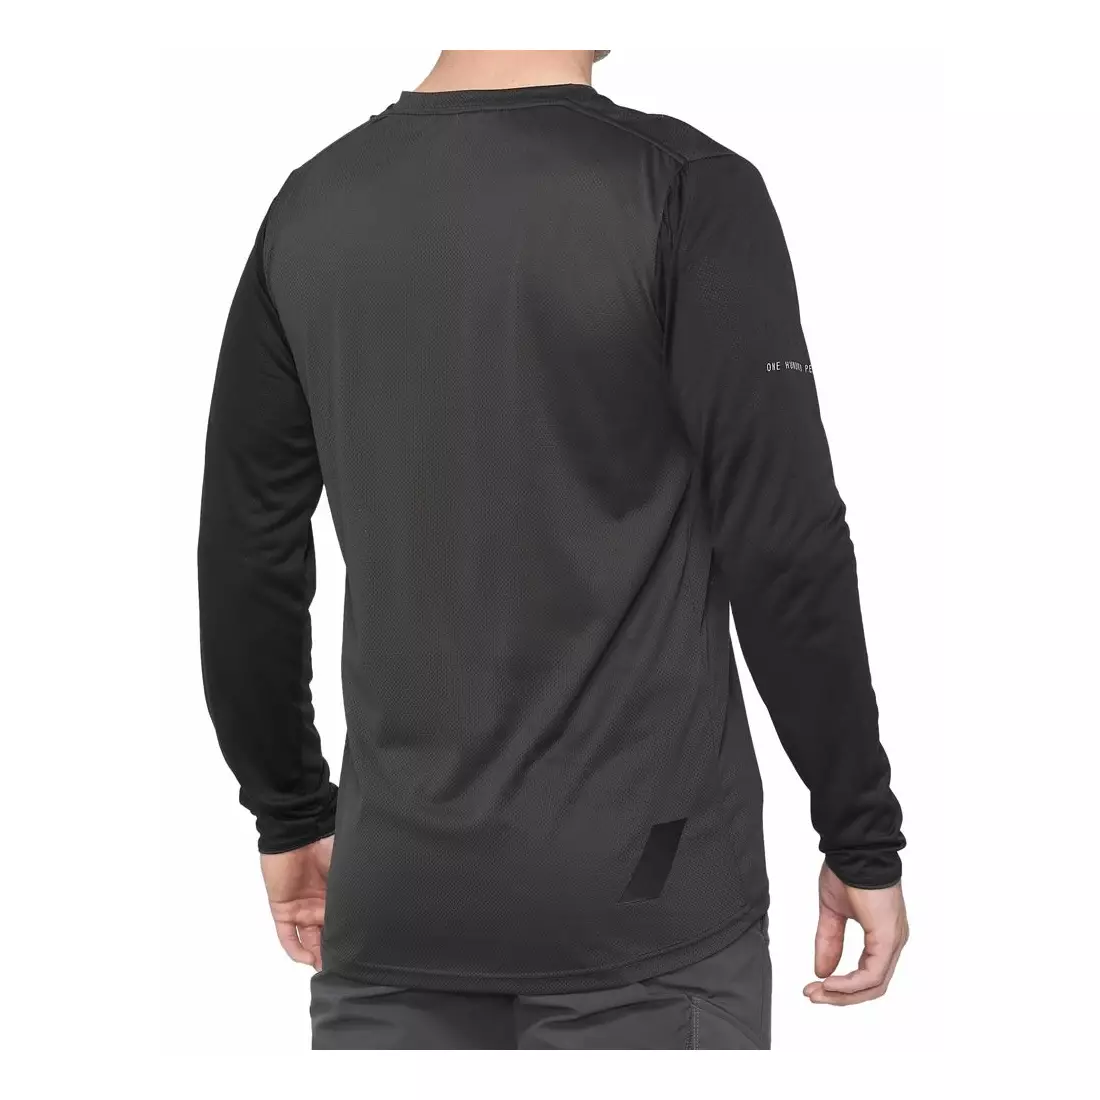 100% koszulka męska z długim rękawem ridecamp black charcoal STO-41402-181-10